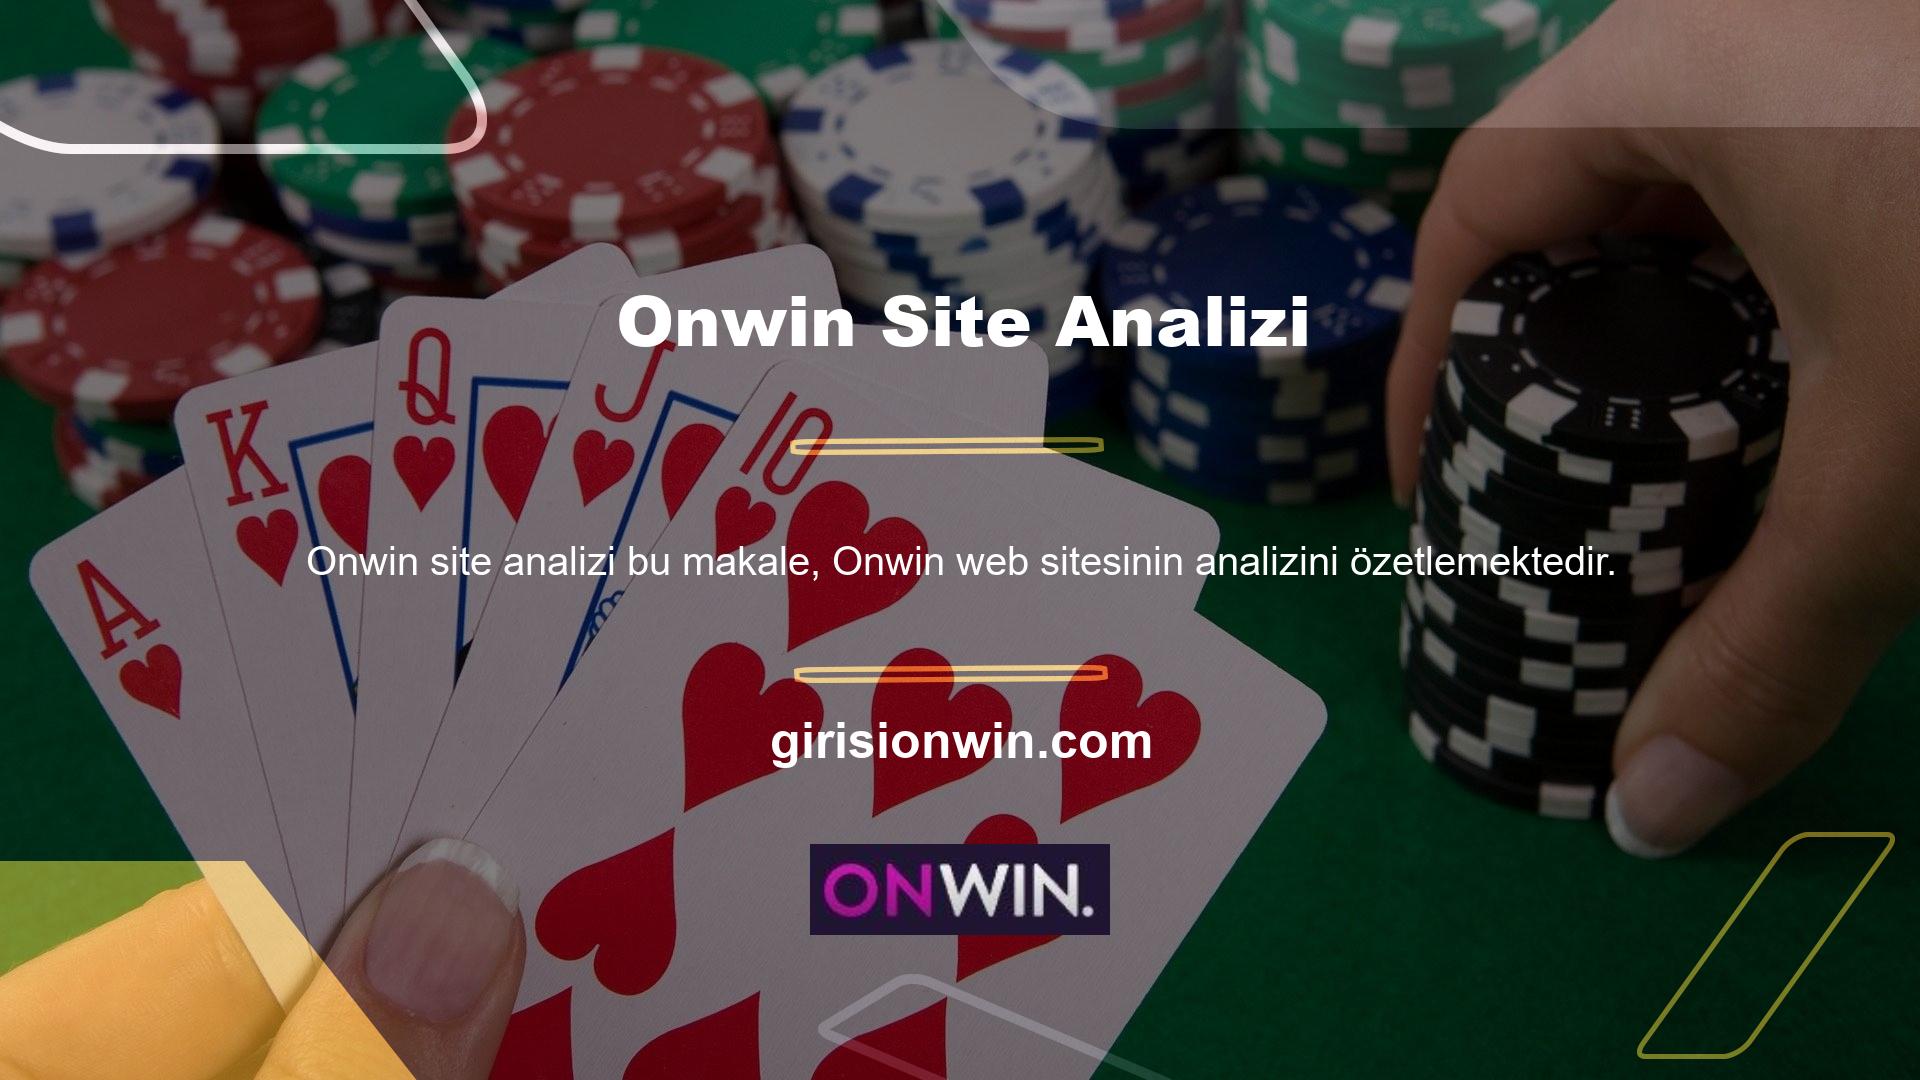 Ağustos ayında Onwin kardeş sitesi olarak lanse edilen Onwin, kısa sürede Türkiye'de lider bir site haline geldi